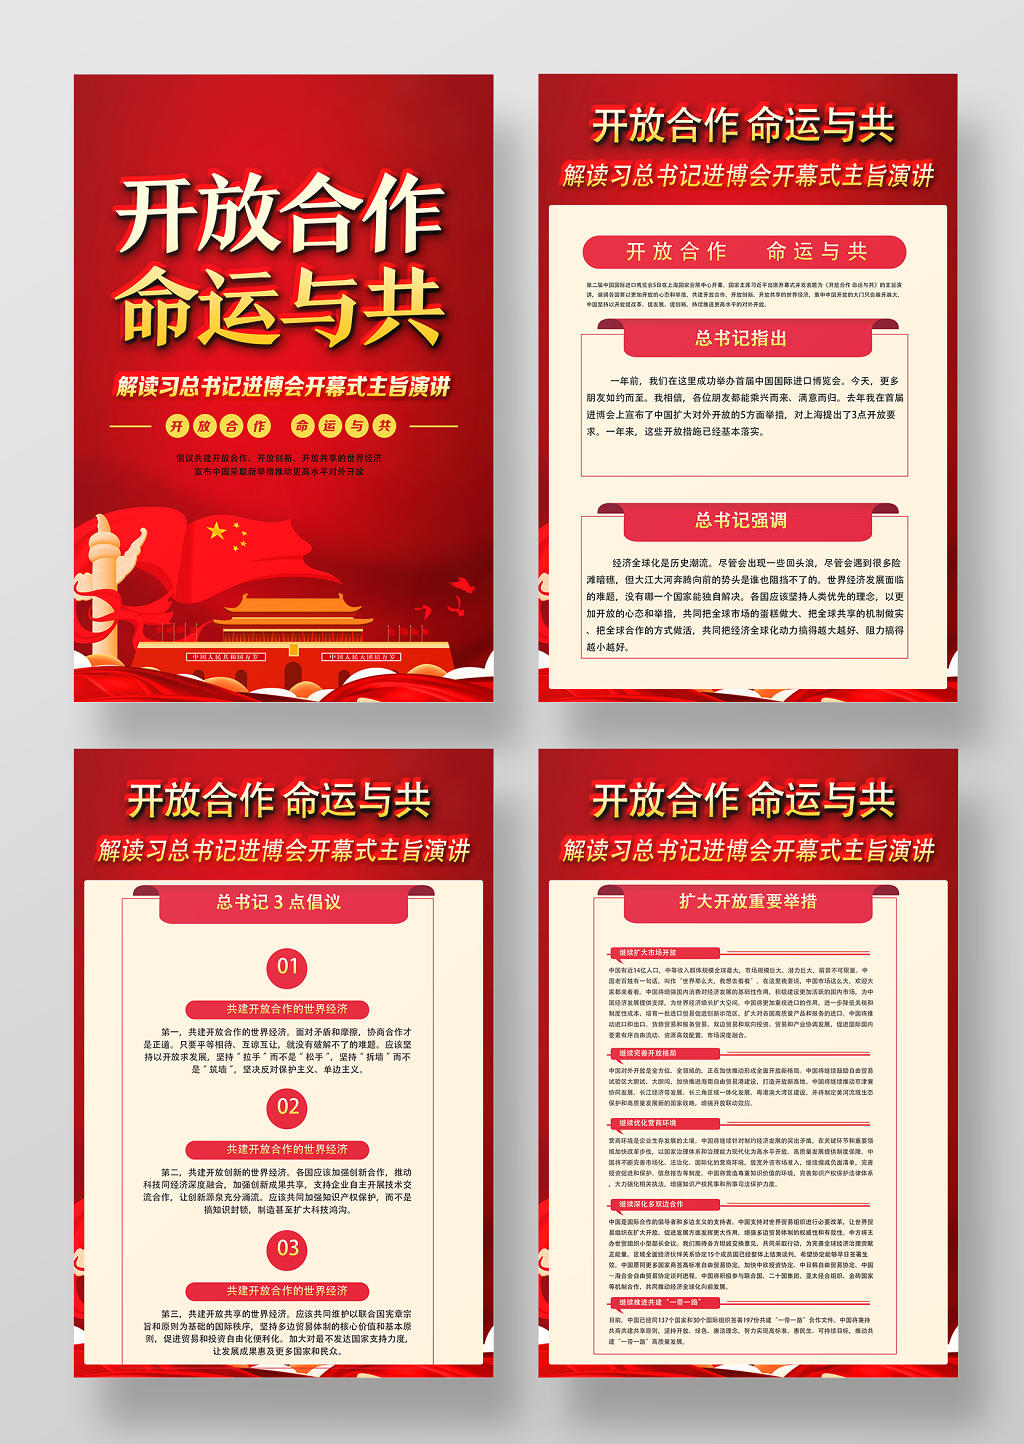 红色经典开放合作命运与共中国国际进口博览会海报